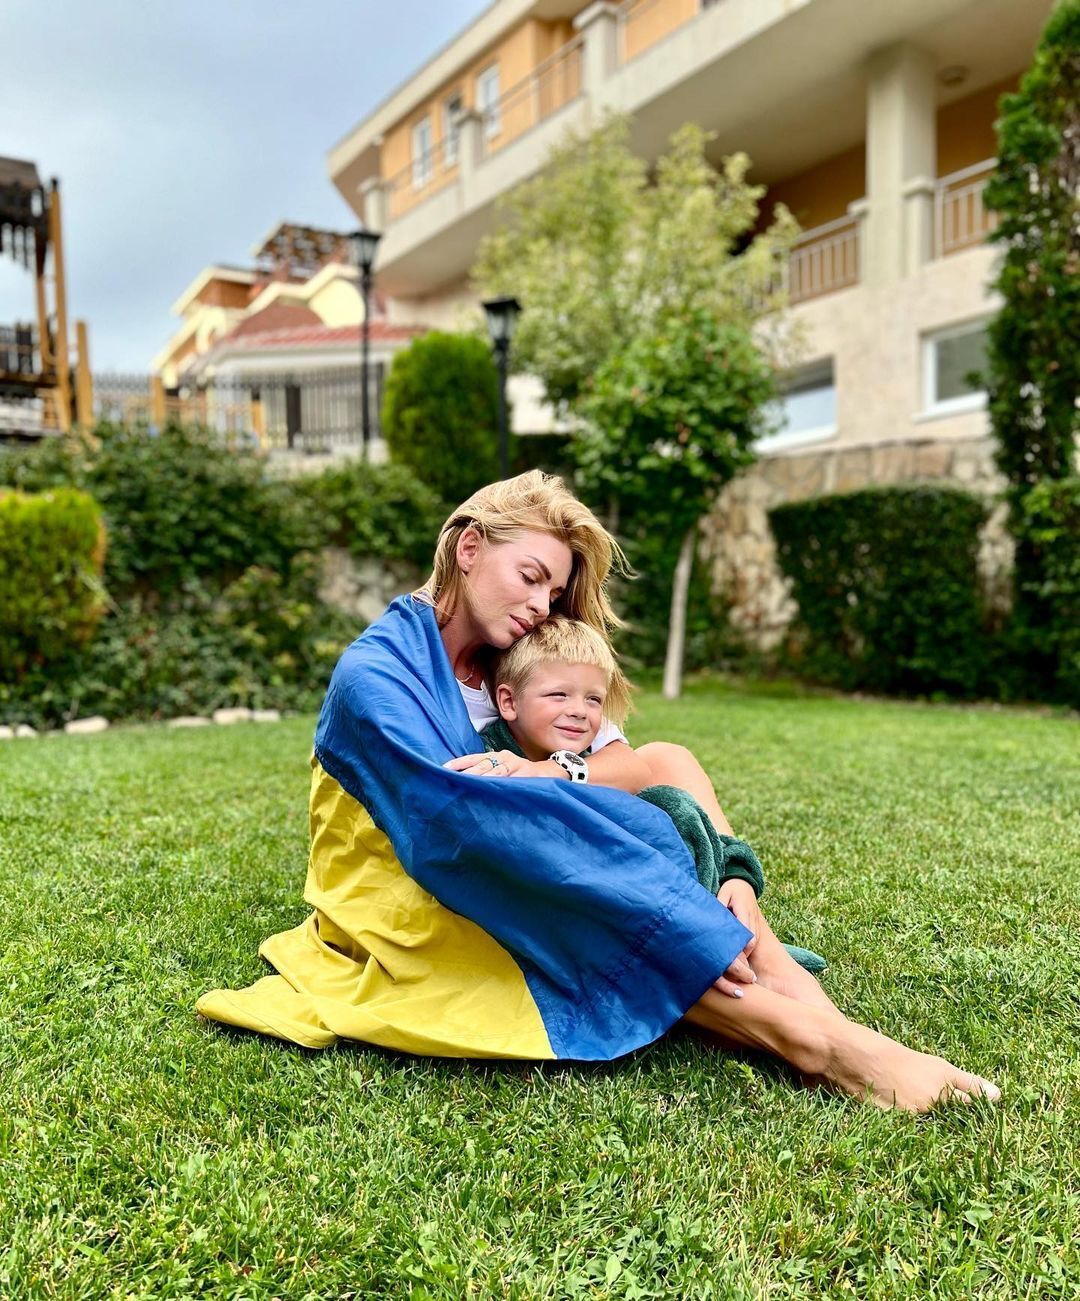 "Жизнь в другой стране – это не отдых": звезда "Дизель Шоу" рассказала, почему не возвращается в Украину из Европы